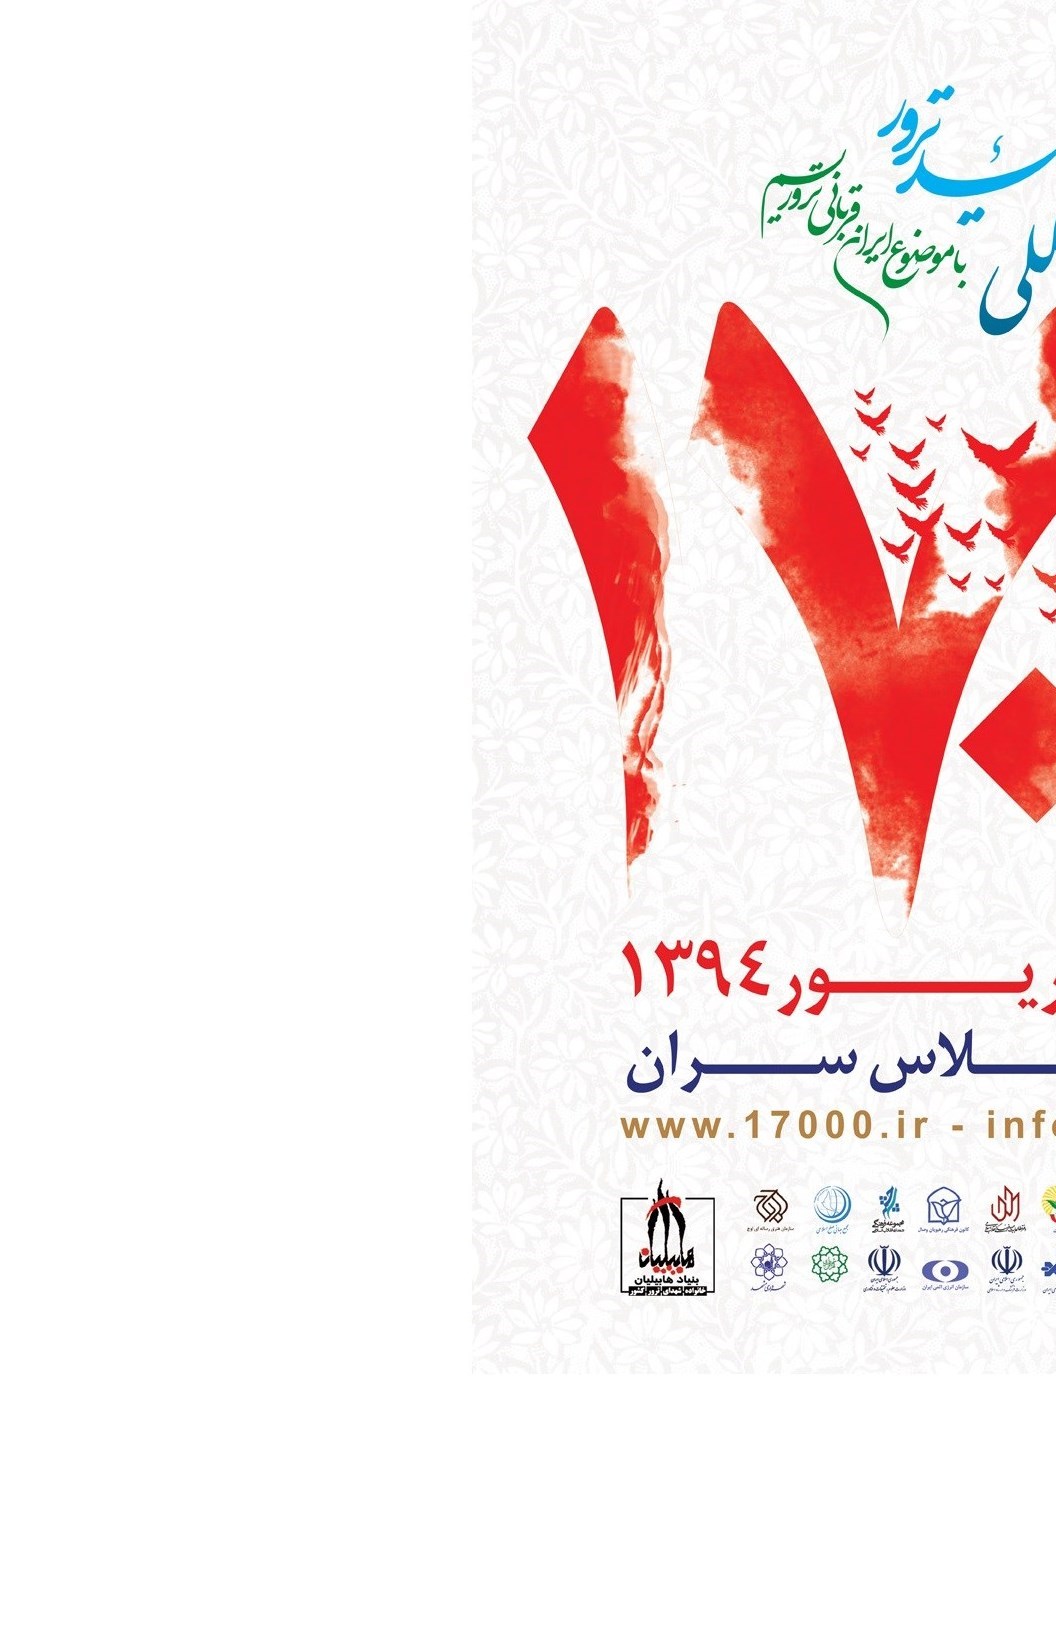 Int’l Congress on Iranian Martyrs of Terrorism Kicks Off in Tehran